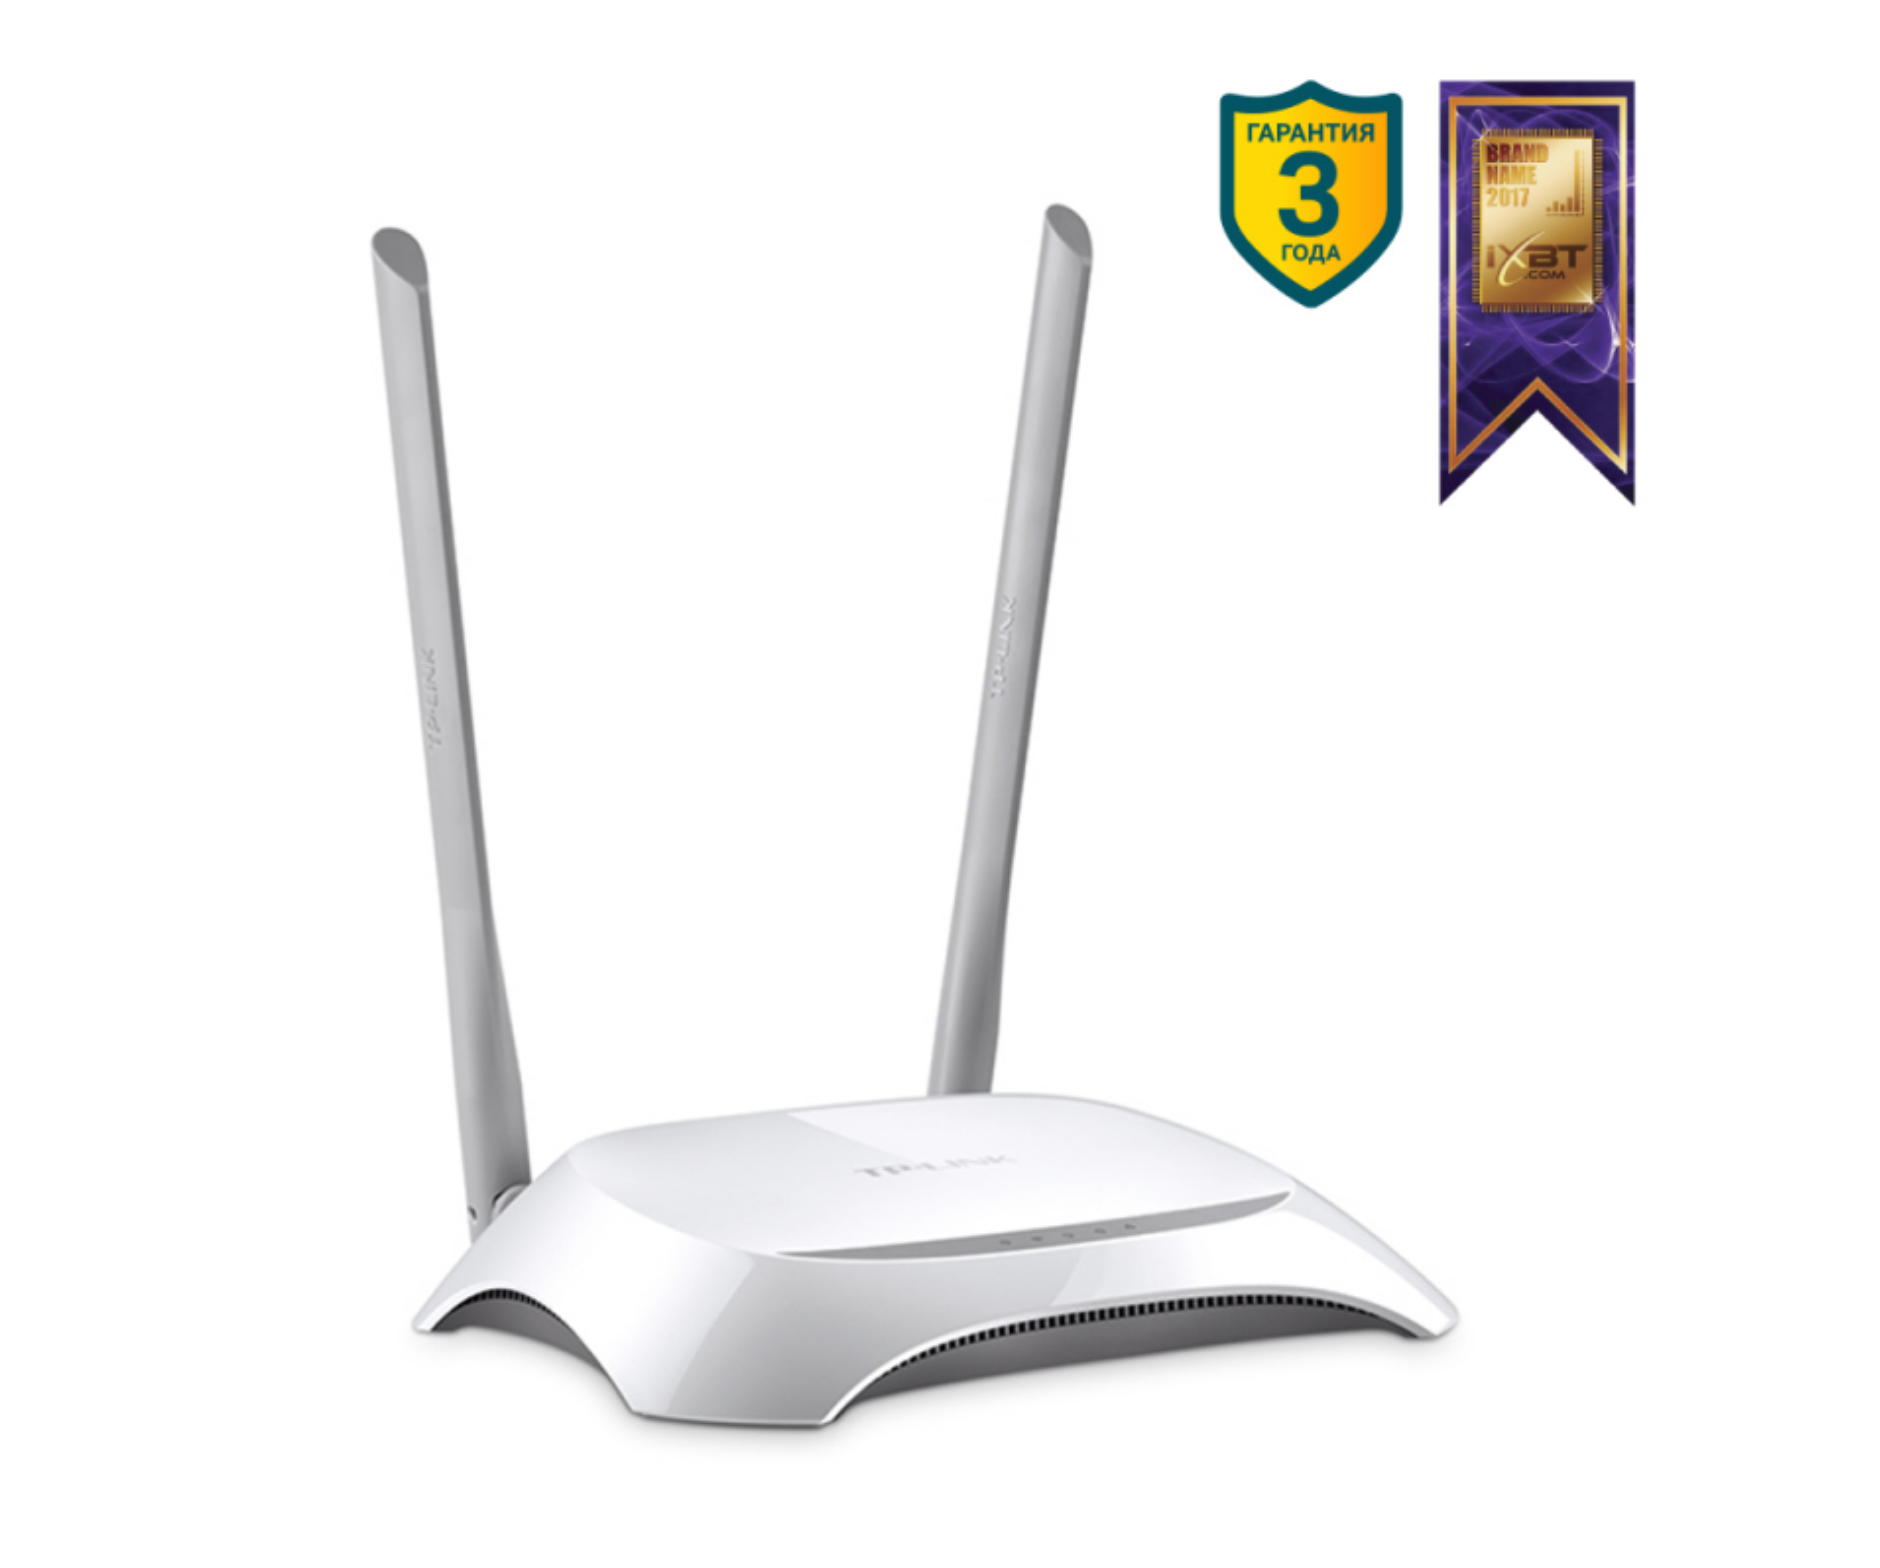 WiFi роутер (маршрутизатор) TP-LINK , родительский контроль, скорость передачи данных до 300 Мбит/с,